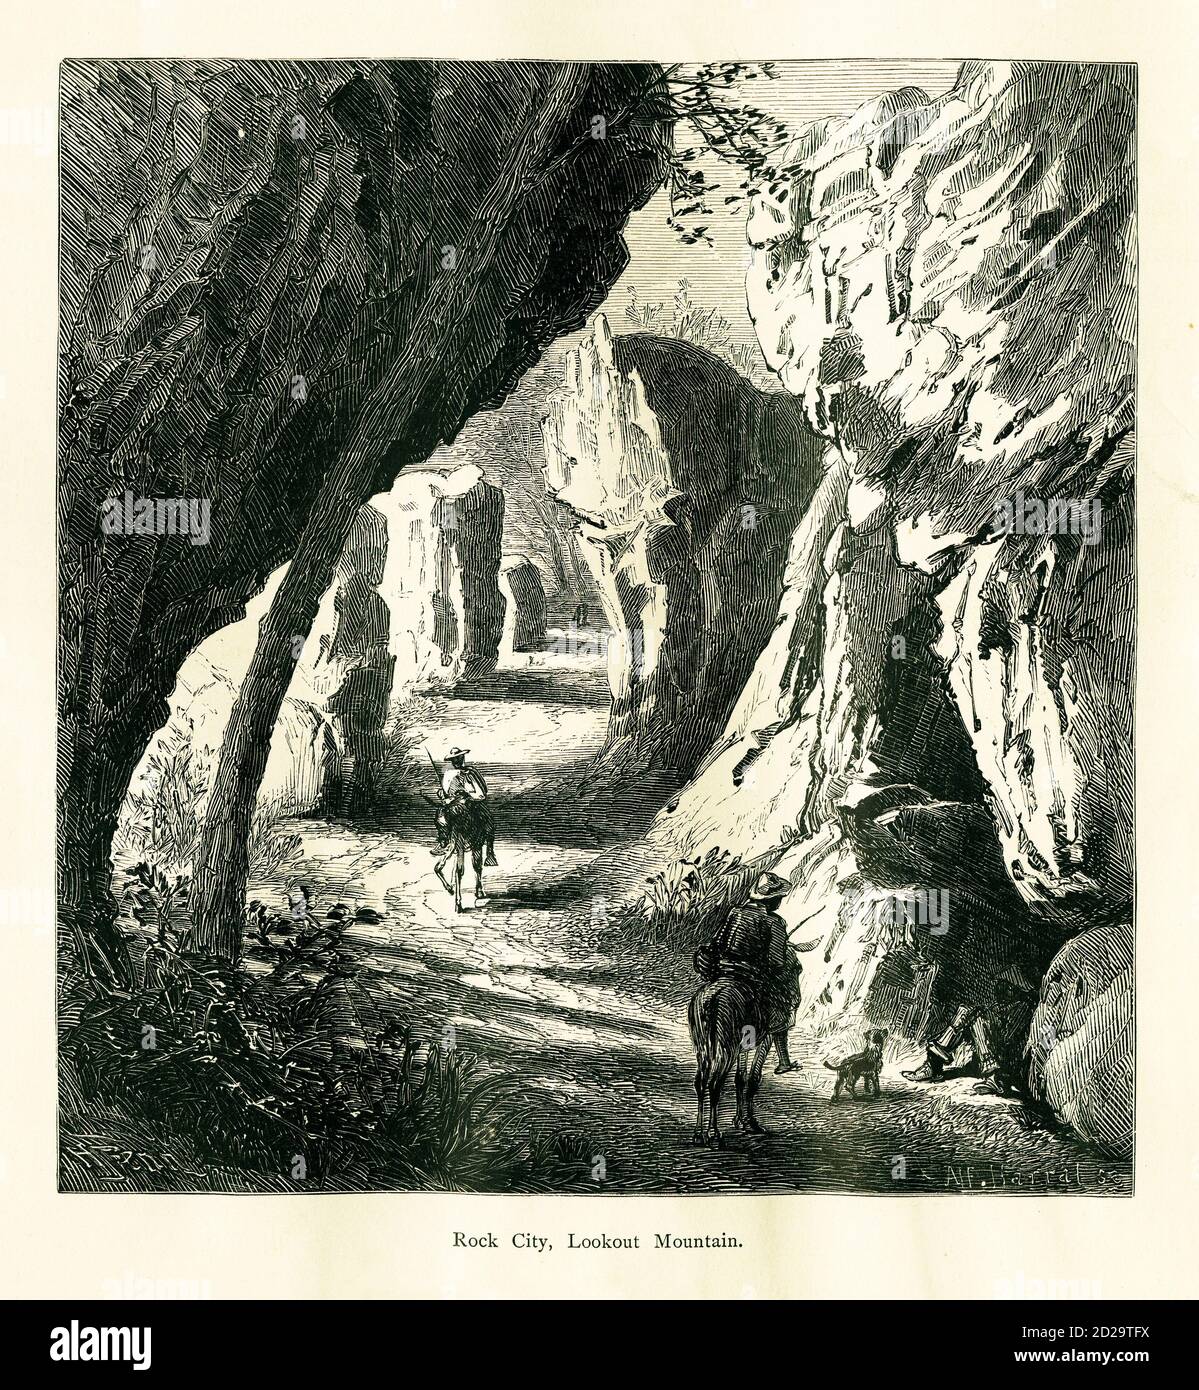 Stich aus dem 19. Jahrhundert von Rock City, auf Lookout Mountain, in der Nähe von Chattanooga, US-Bundesstaat Tennessee. Illustration veröffentlicht im malerischen Amerika oder Stockfoto